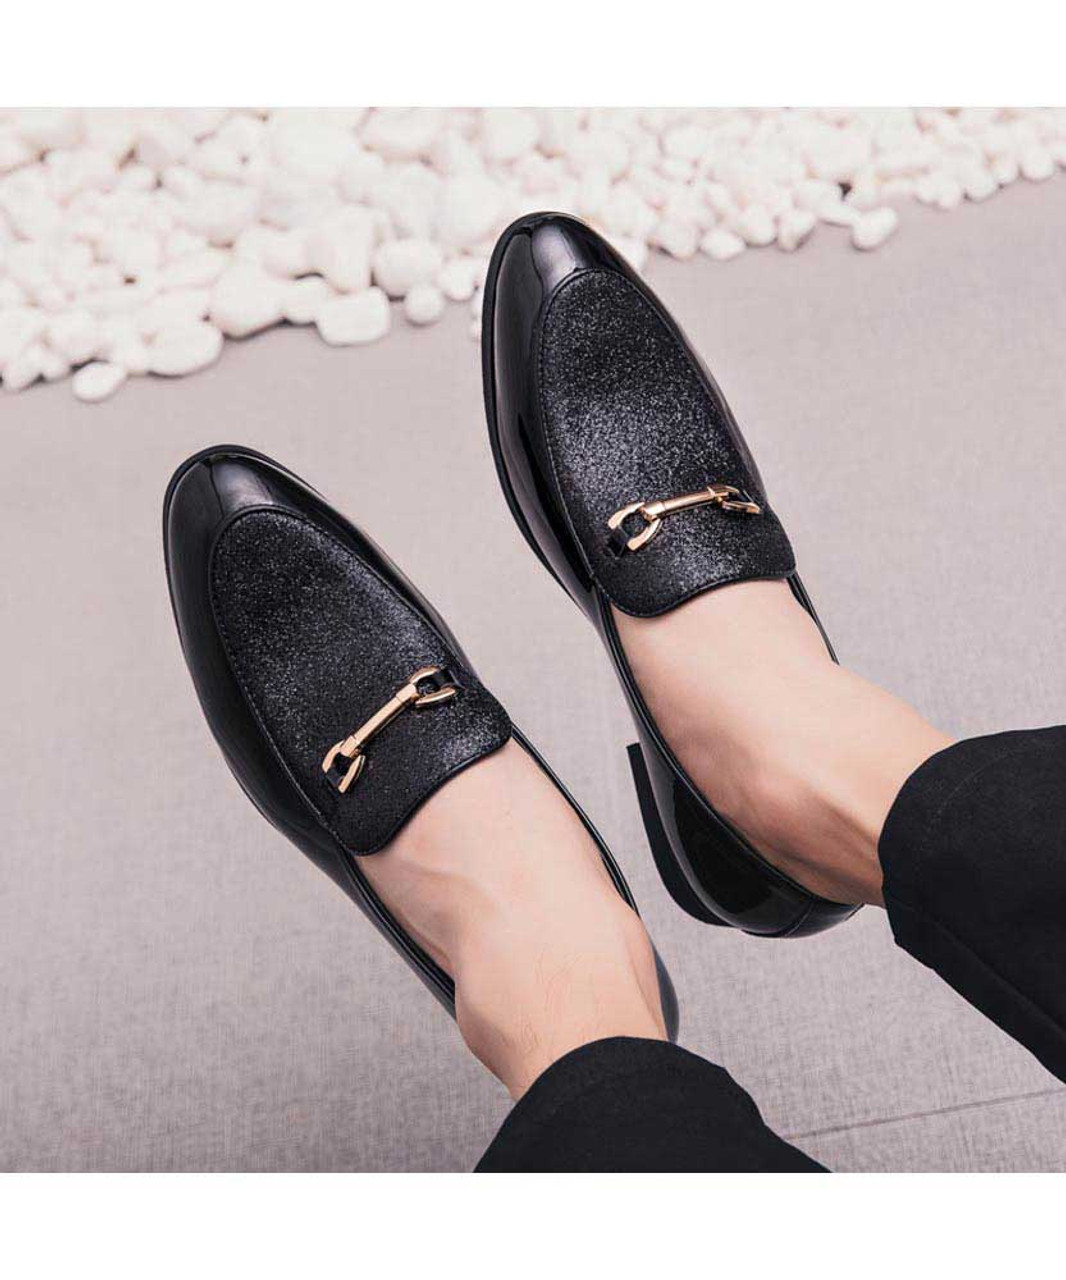 Black patterned buckle on top slip on dress shoe | Mens dress shoes ...